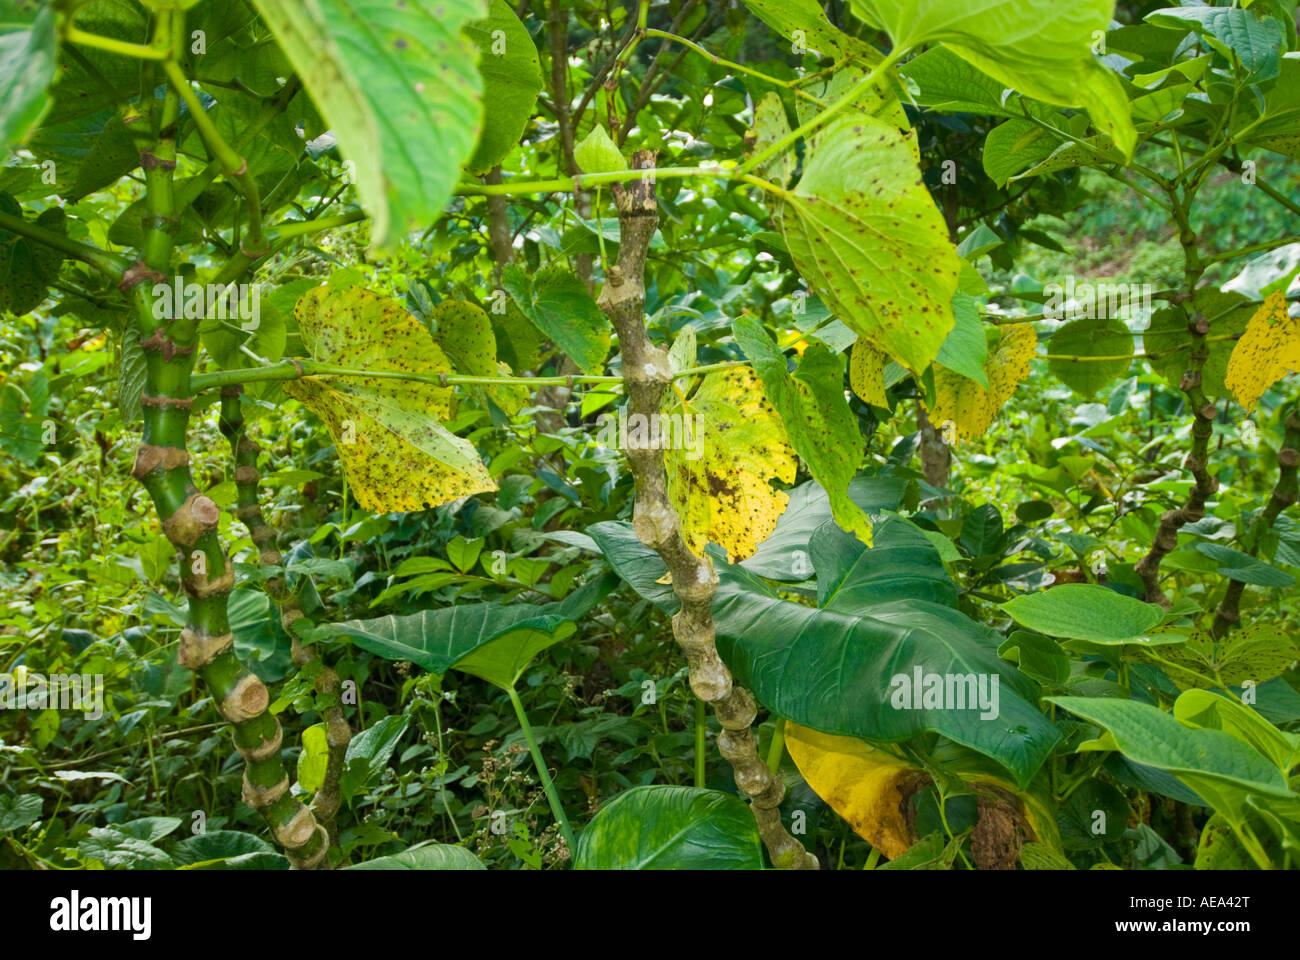 KAVA Piper Methysticum frischen Pflanze Fidschi-Inseln Obst Brot Frucht  Baum Breadfruittree Früchte und Blätter Stockfotografie - Alamy